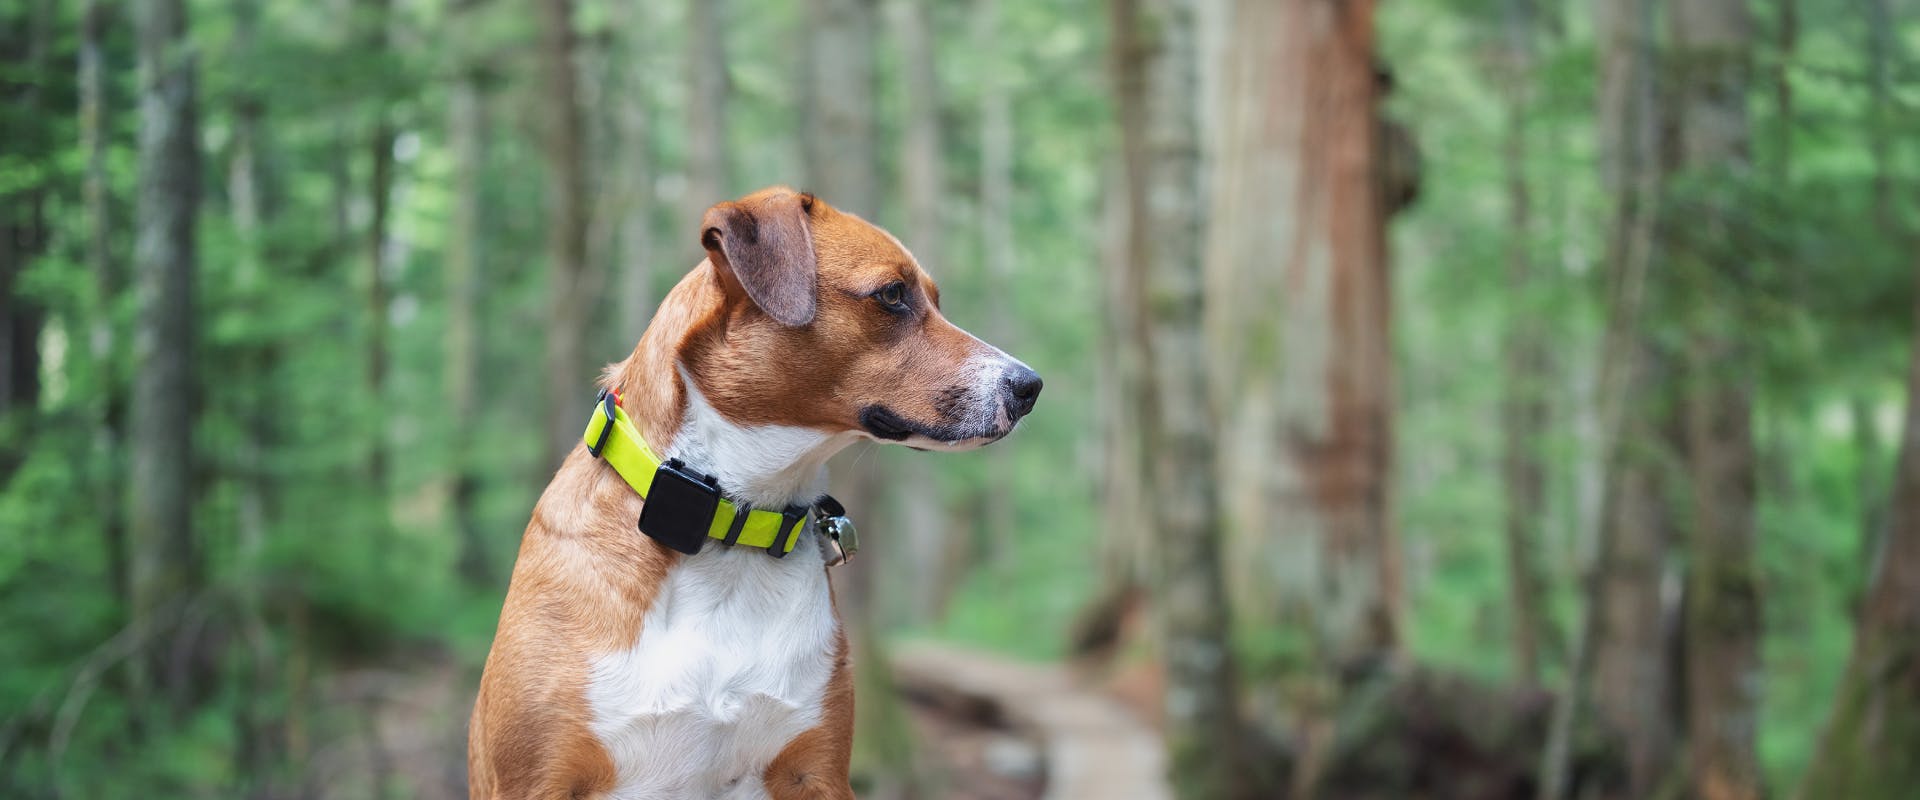 A dog wearing a tracker collar.